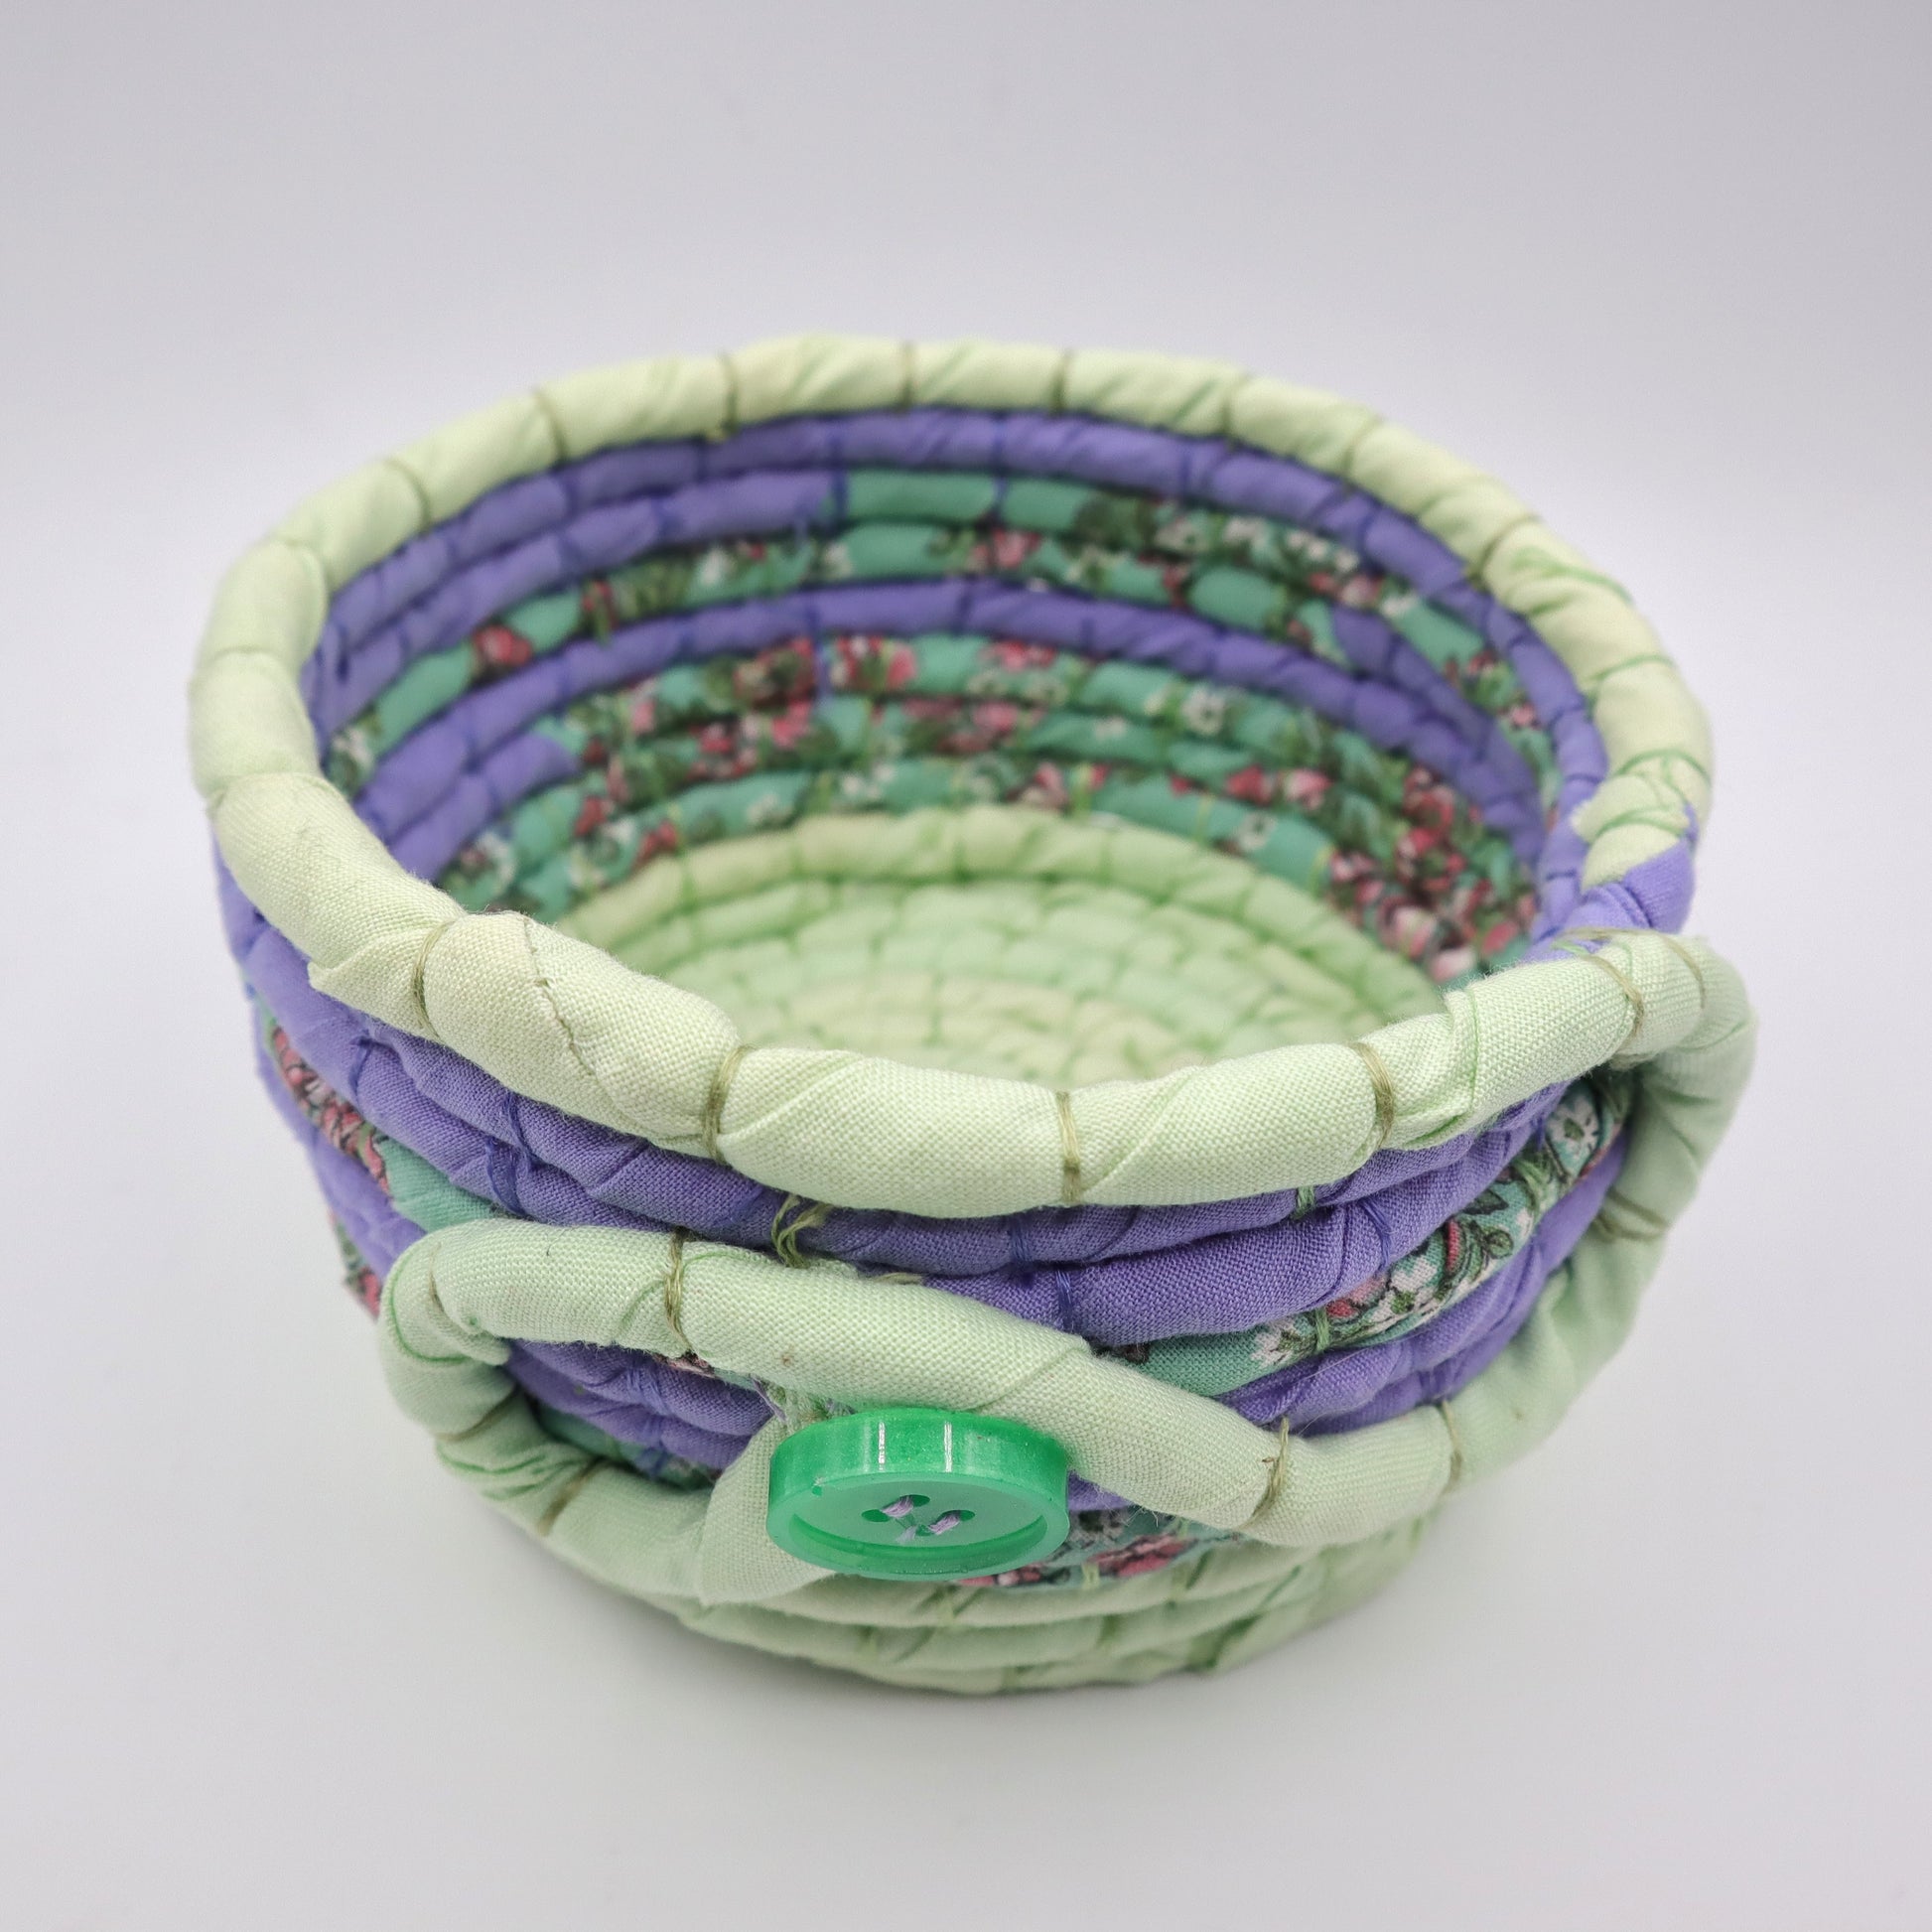 Fabric Yarn Bowls - Small - Natural Fibre Arts